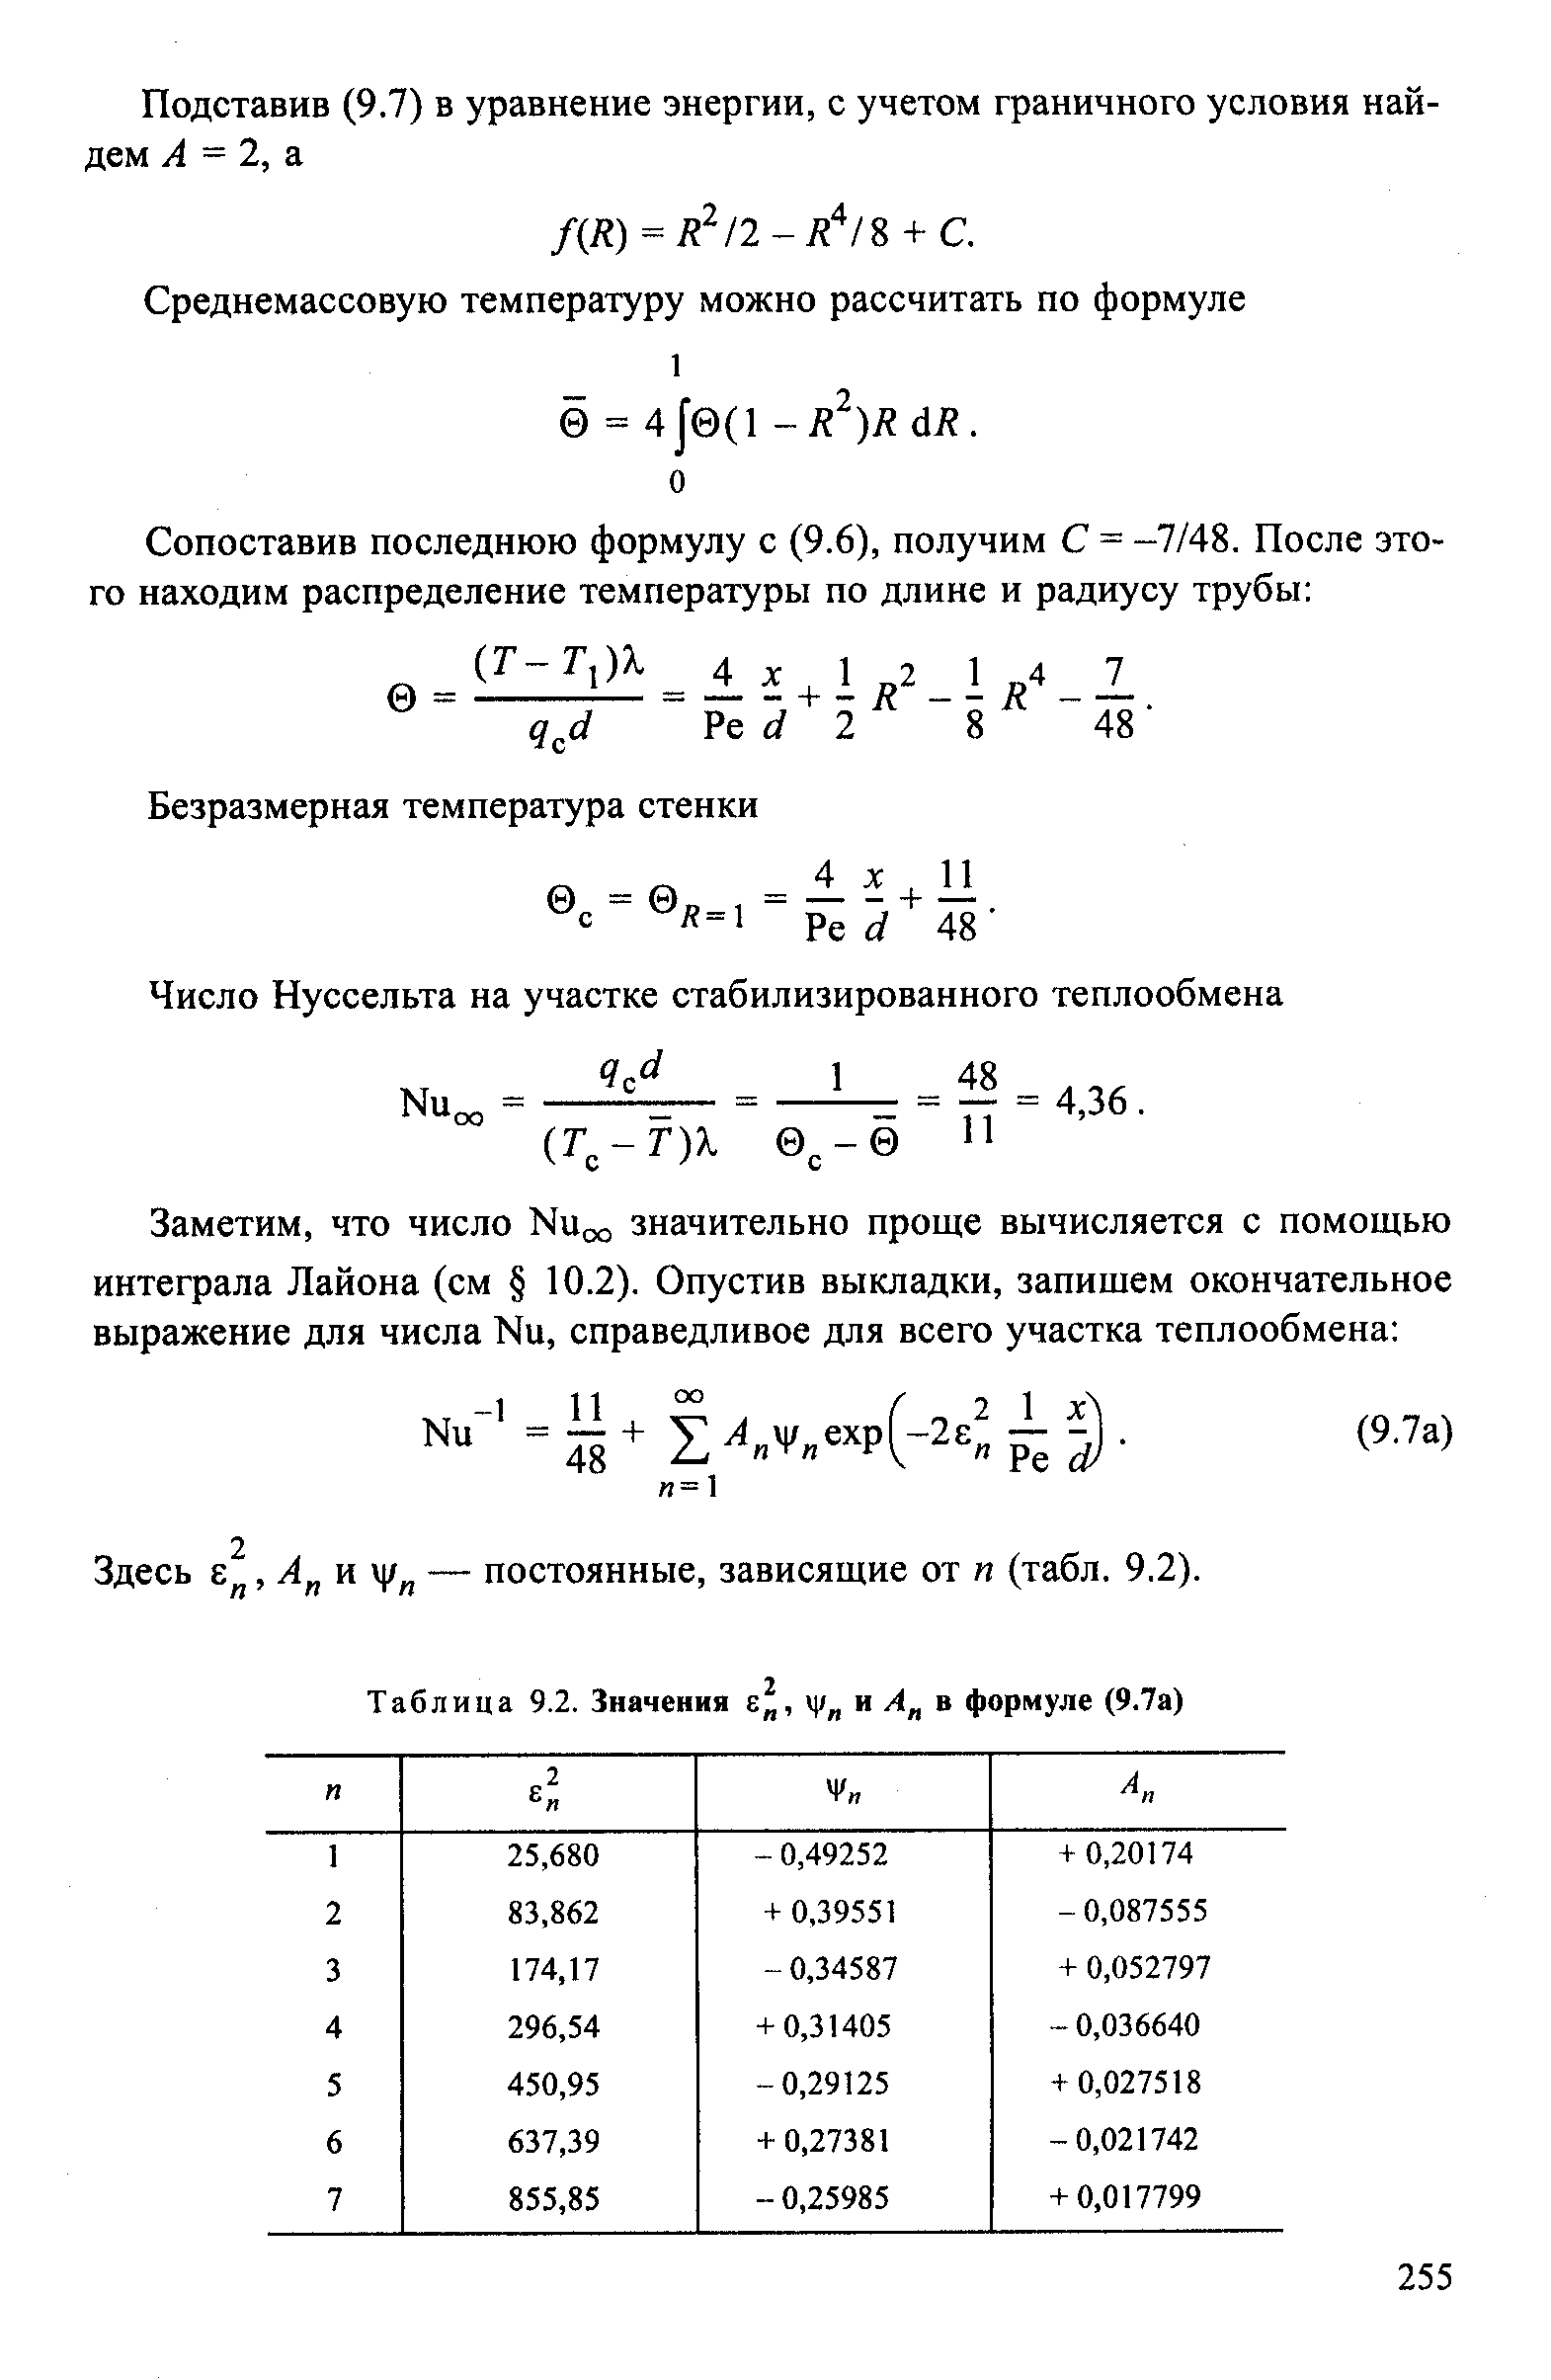 Подставив (9.7) в уравнение энергии, с учетом граничного условия найдем А = 2, а.